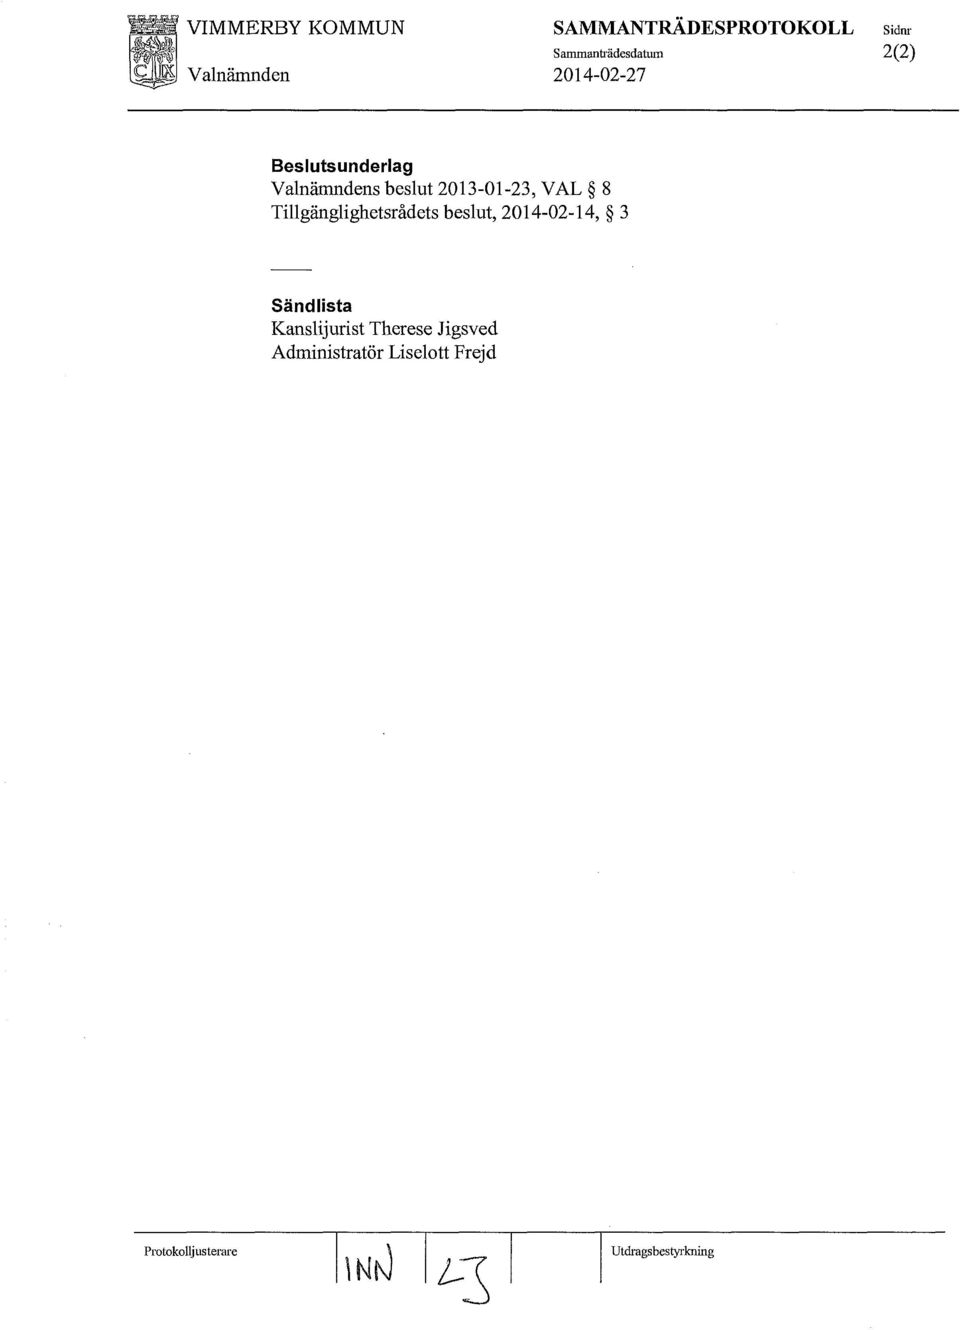 Tillgänglighetsrådets beslut, 2014-02-14, 3